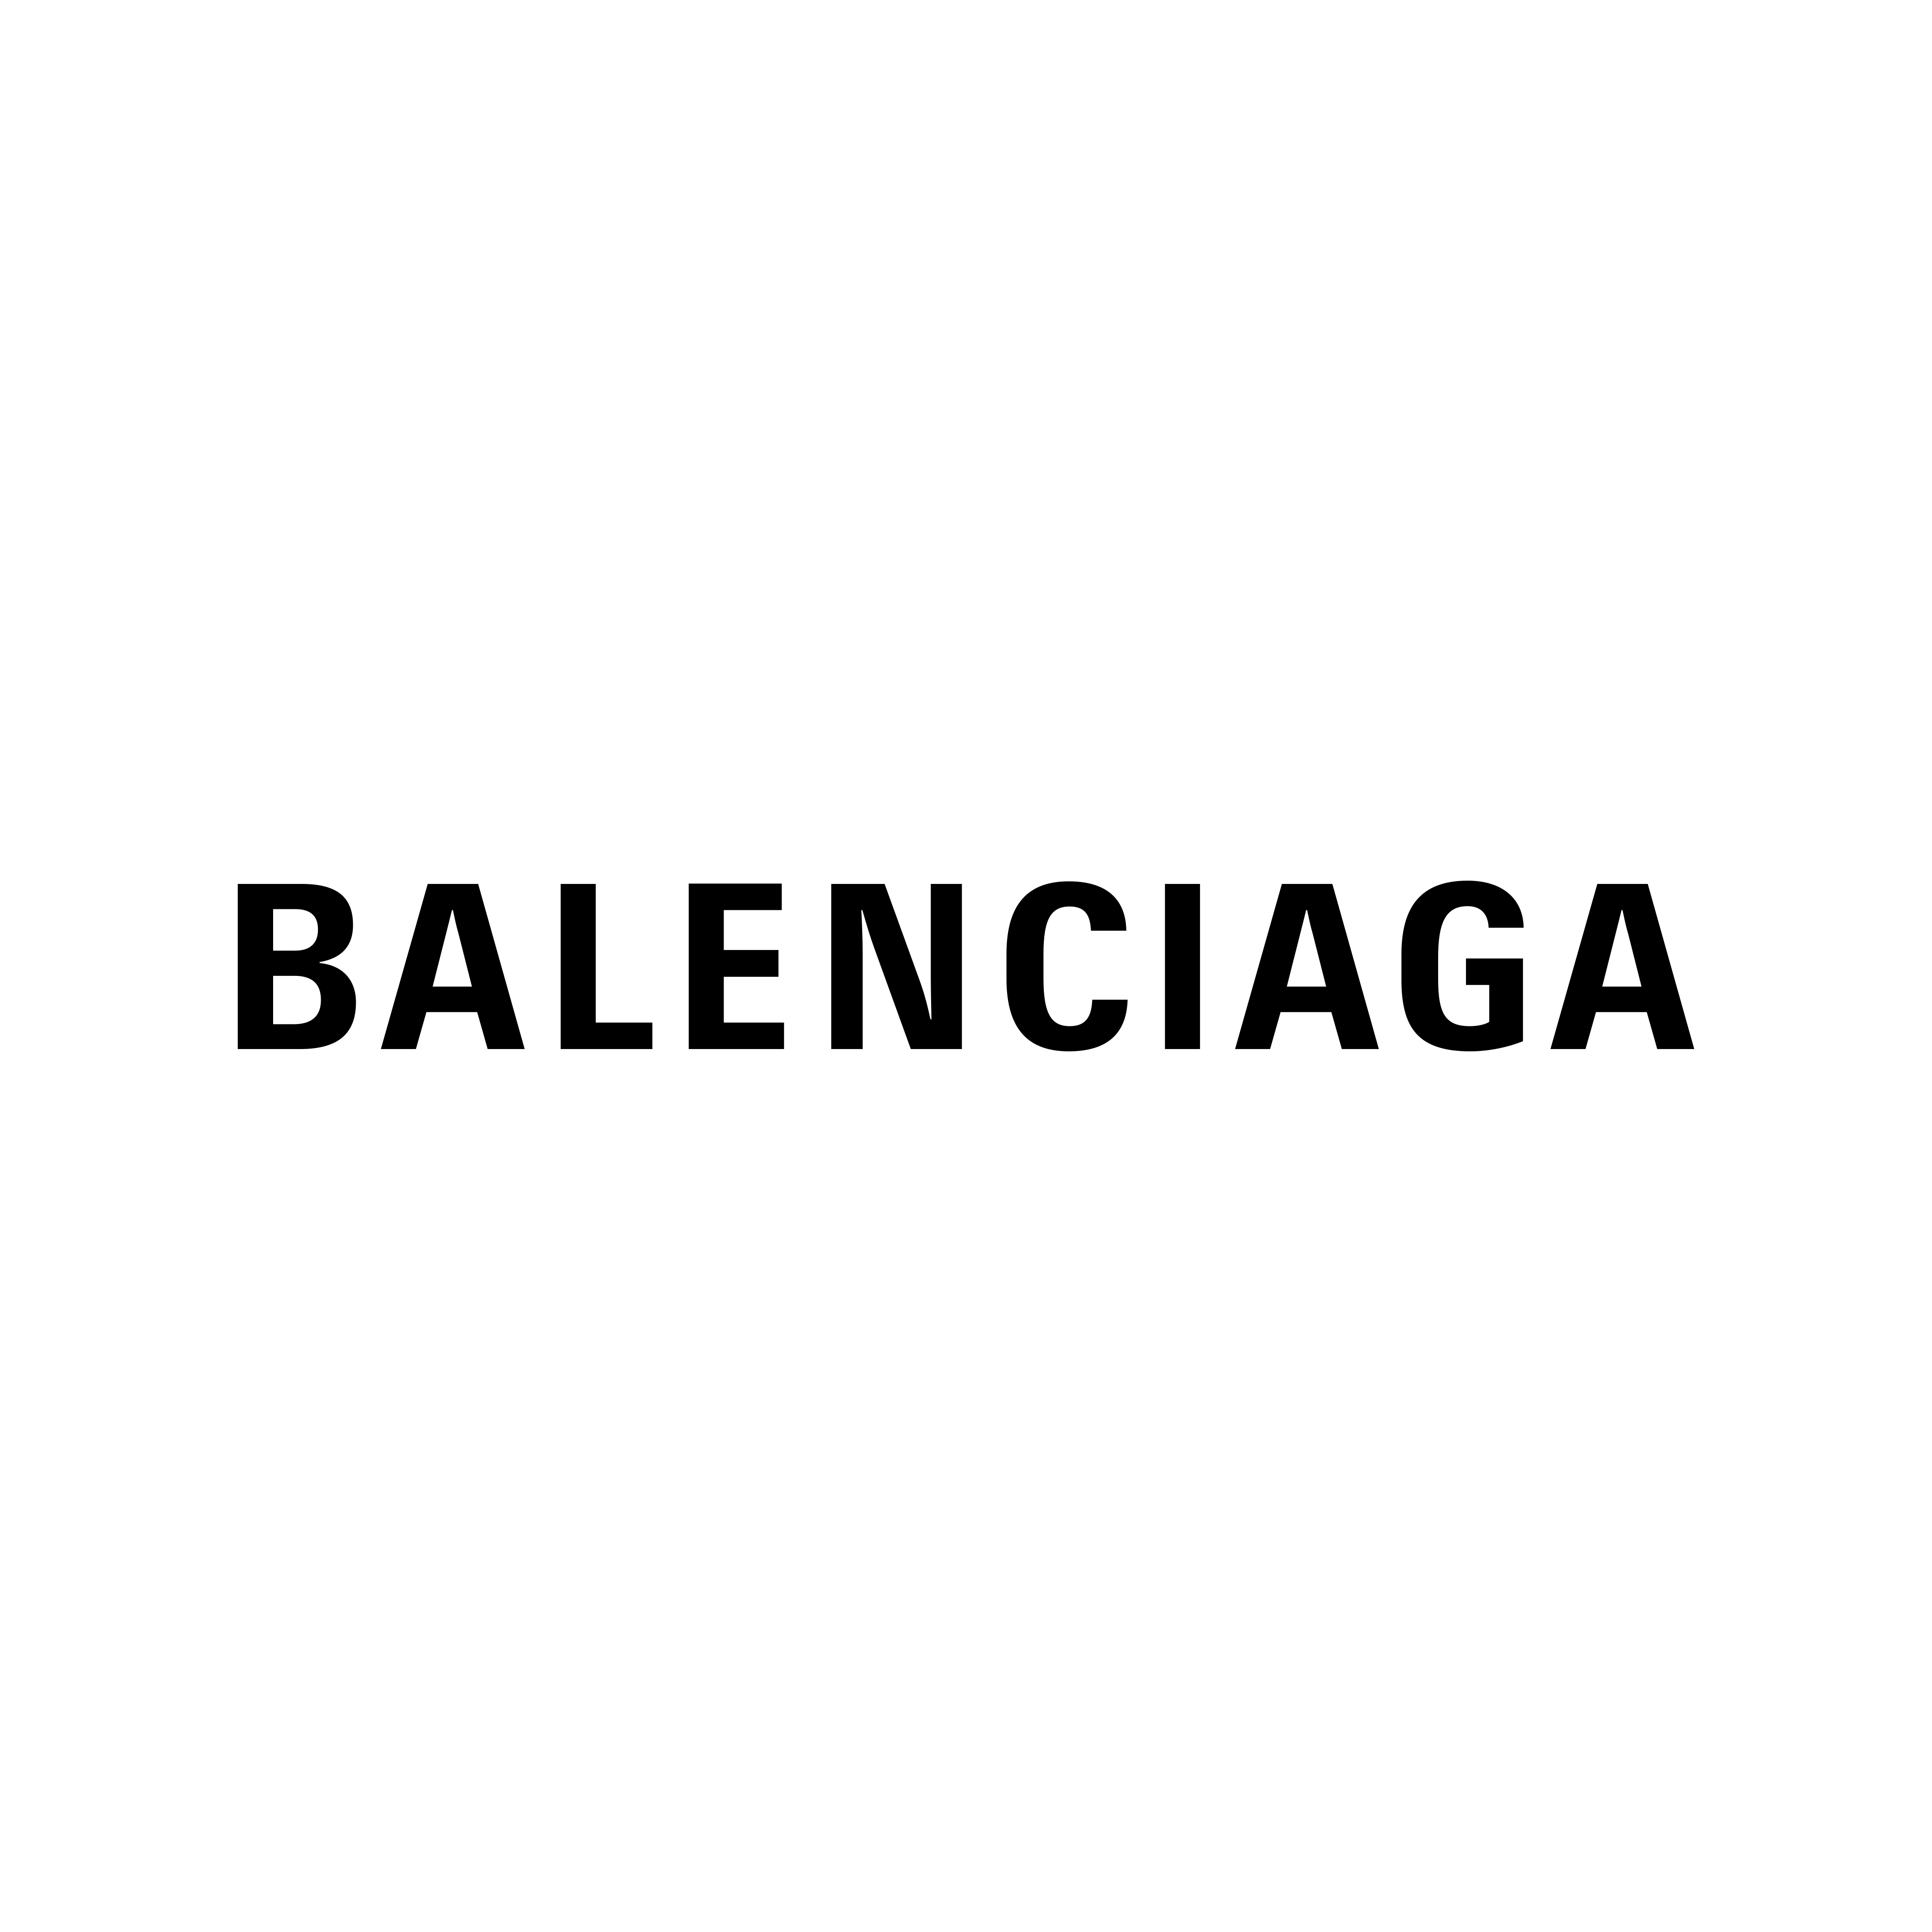 Balenciaga Logo PNG File